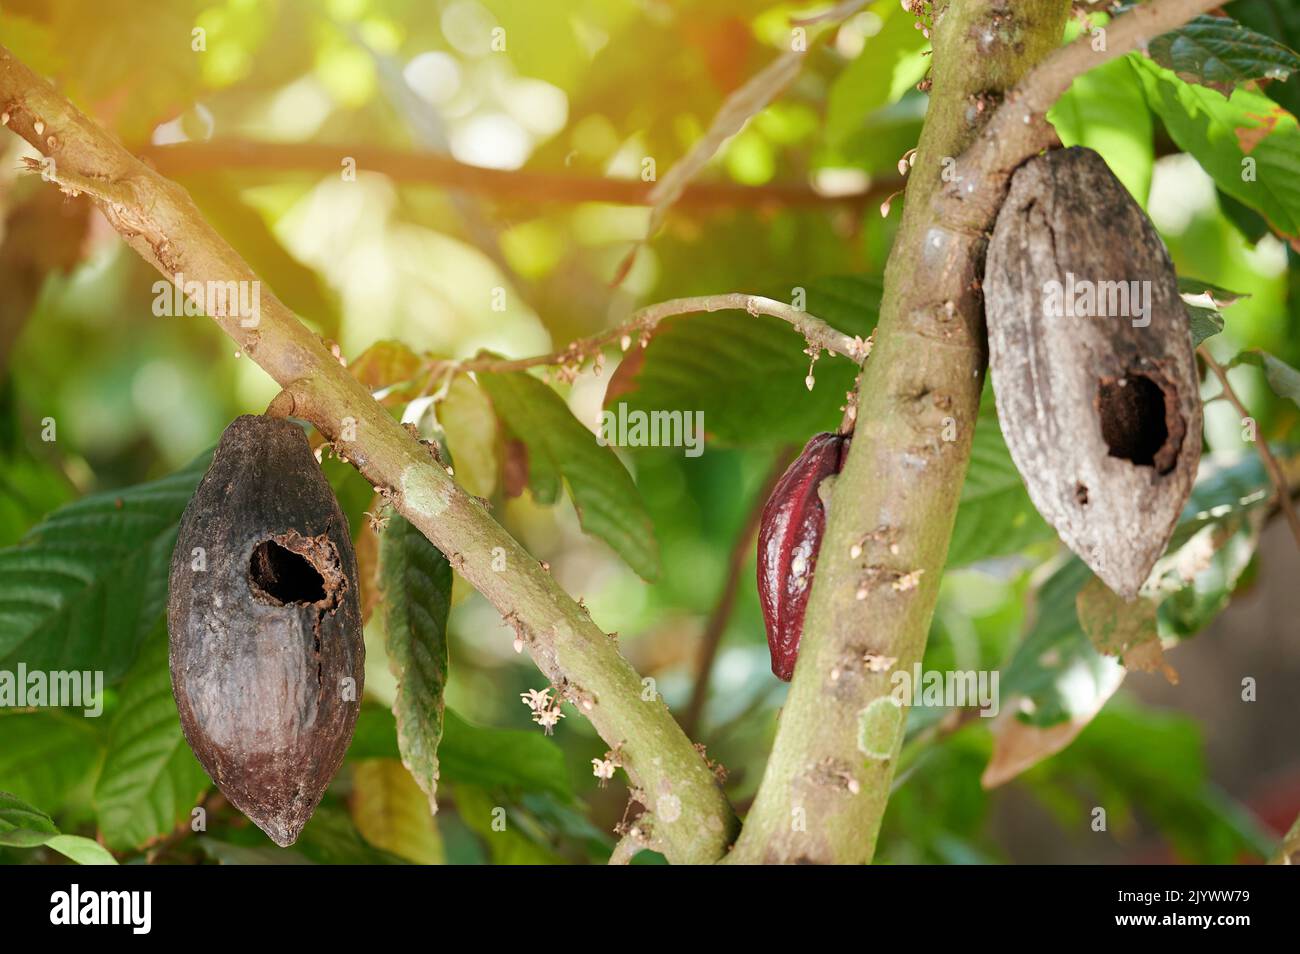 Bacello di cacao con buco dagli uccelli mangiare all'interno su sfondo sfocato giardino Foto Stock